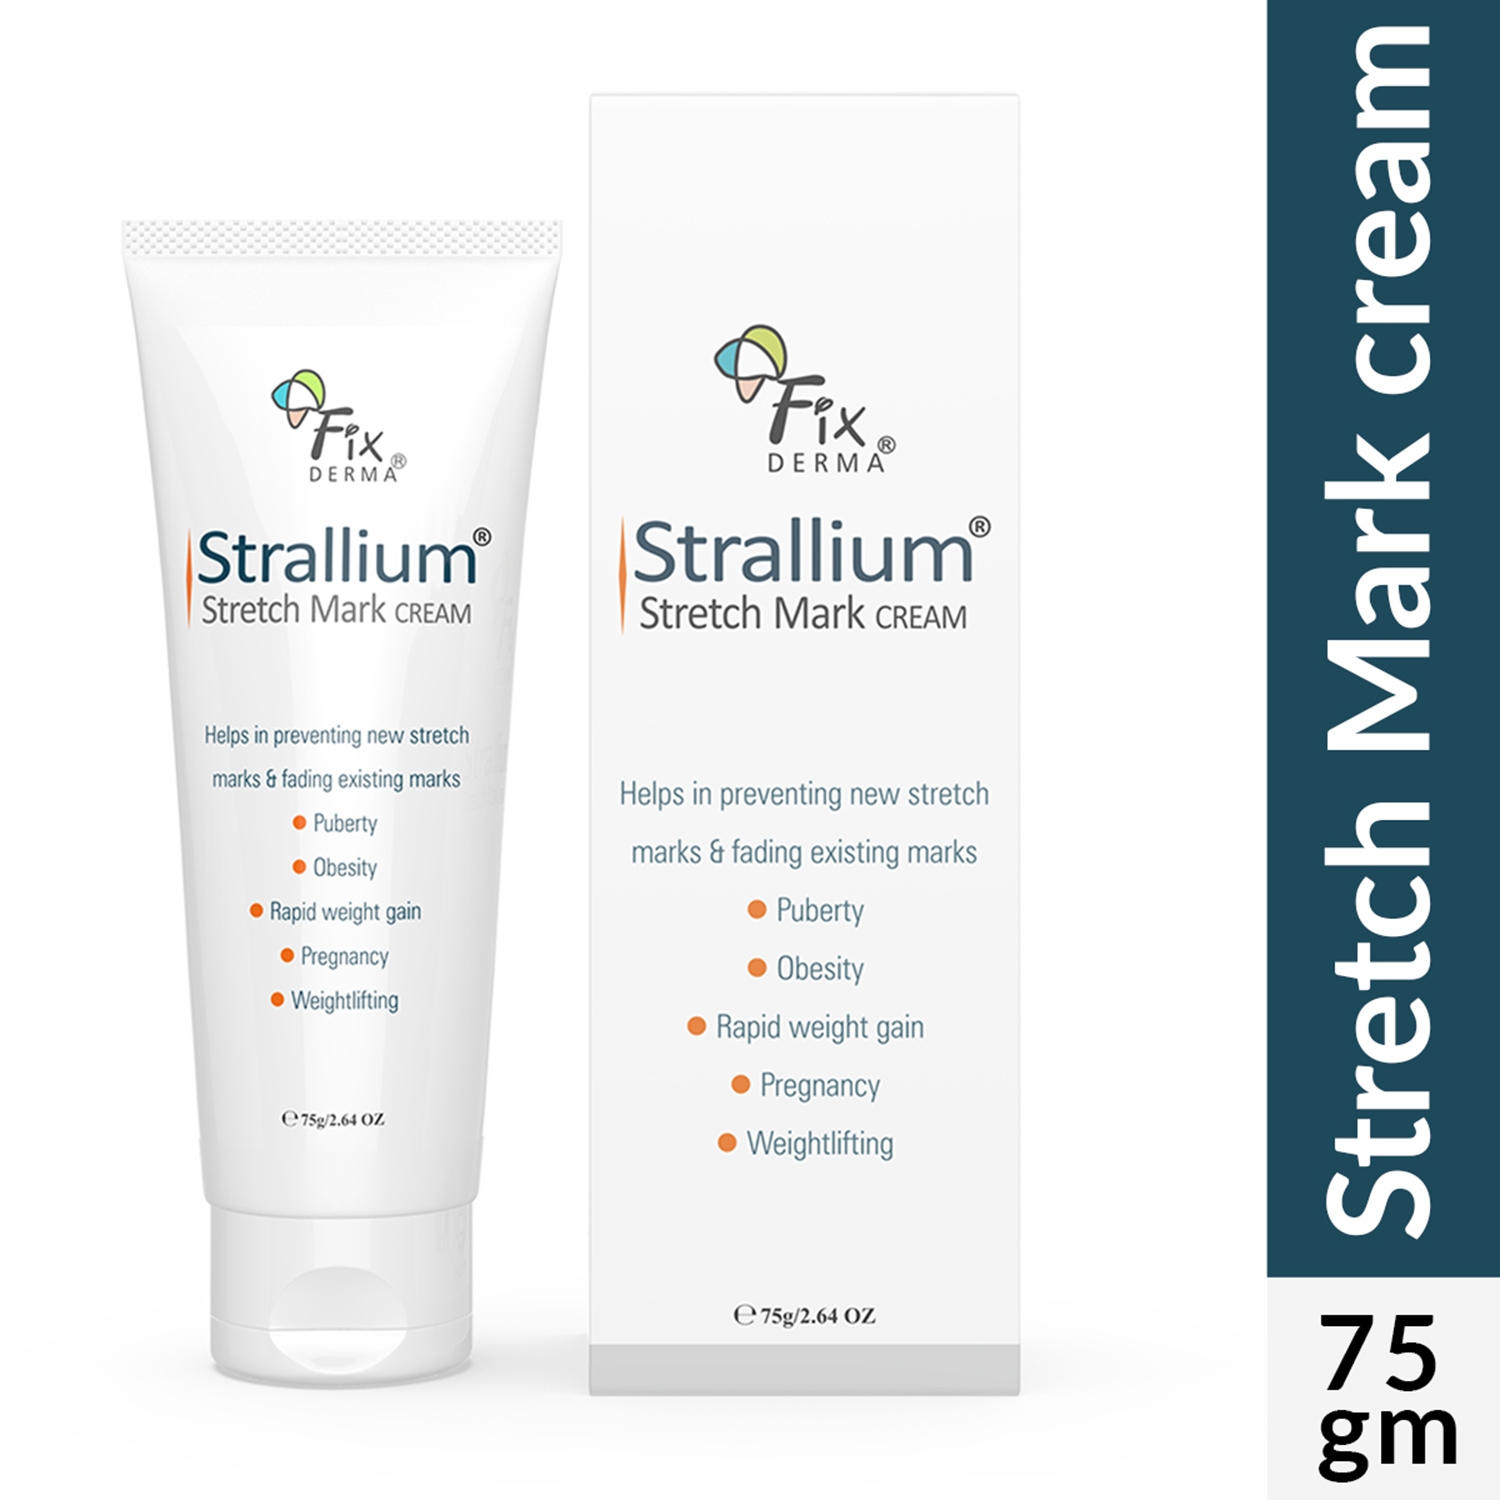 Fixderma | Fixderma Strallium Anti Stretch Mark Cream (75g)